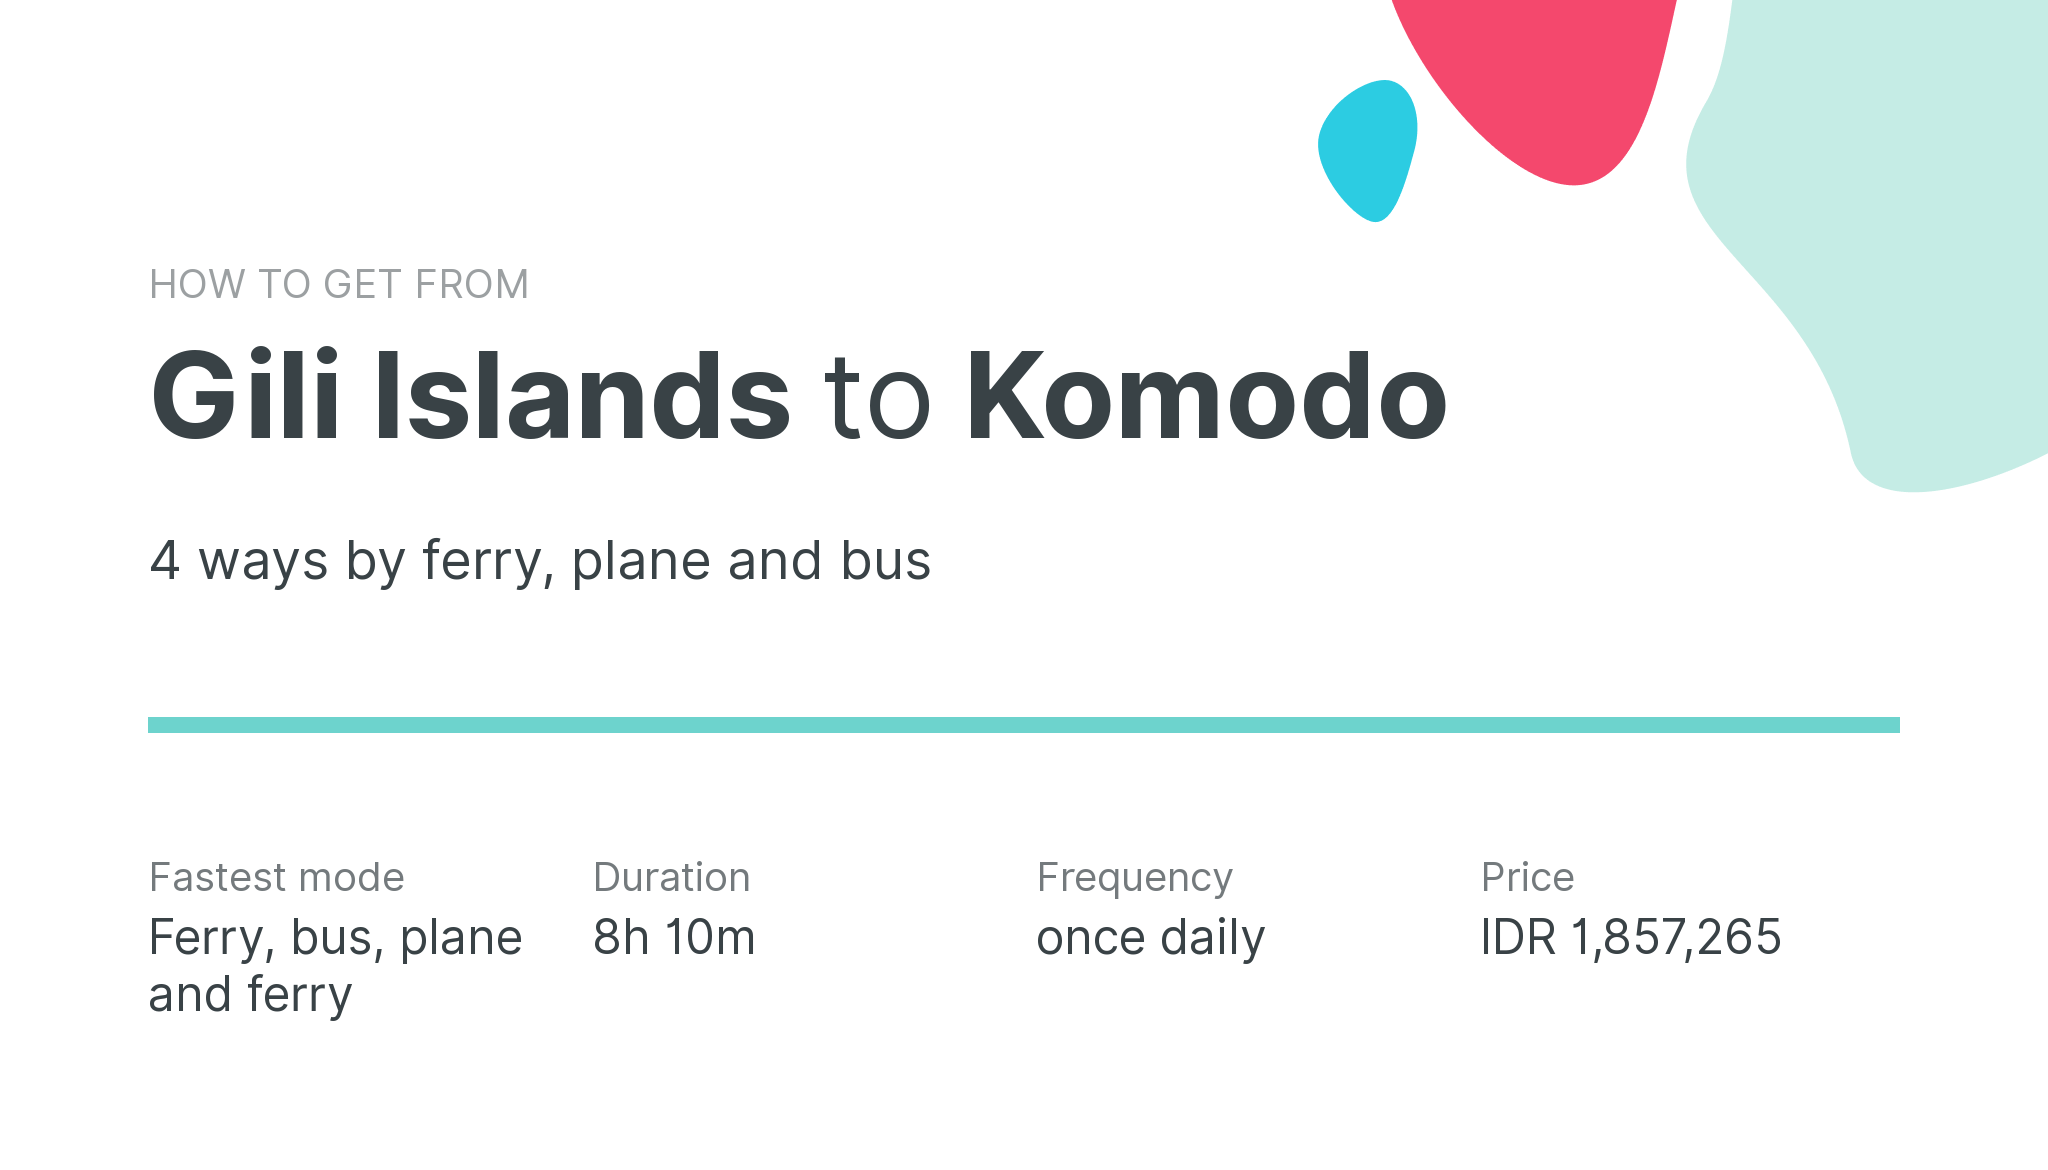 How do I get from Gili Islands to Komodo